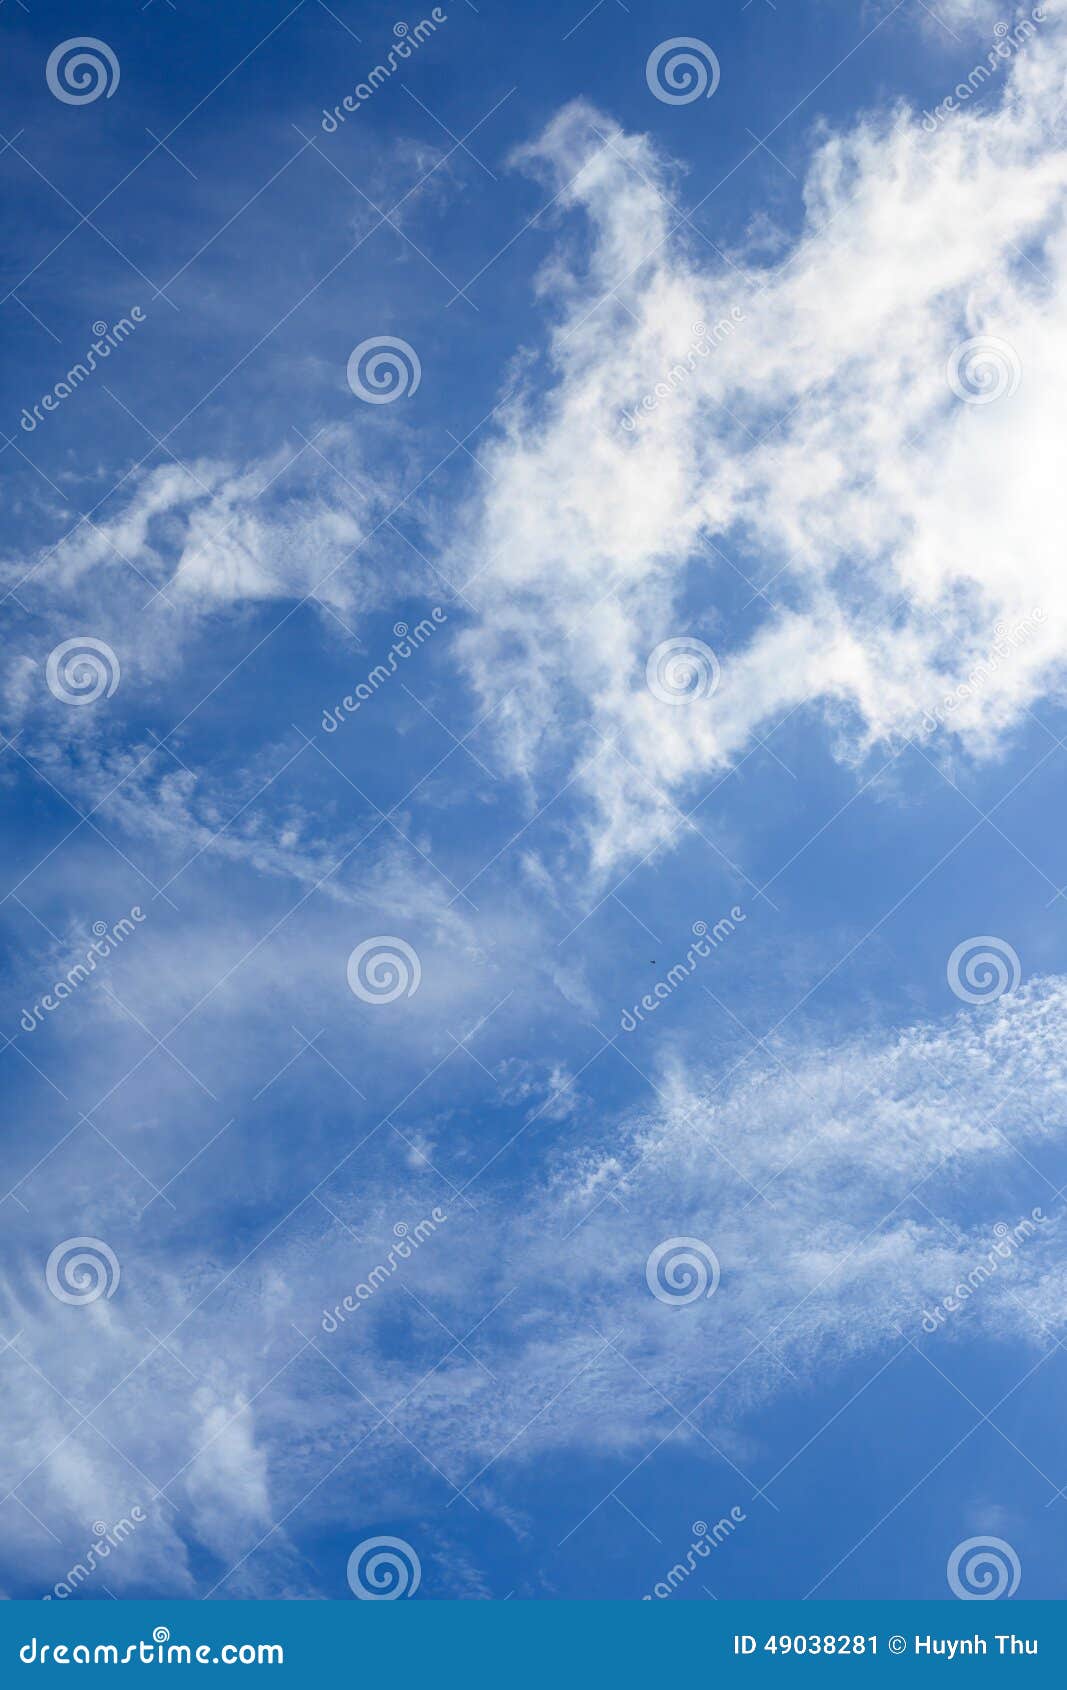 Đám mây trên nền bầu trời xanh – Đón nhận khoảnh khắc tuyệt đẹp của thiên nhiên ngay trên bầu trời xanh. Với bao điều kỳ diệu nằm đằng sau mỗi bức ảnh, mỗi đám mây cho ta một cảm giác thật khác biệt. Tự do bay lượn trên những không trung thật đẹp của chúng ta.